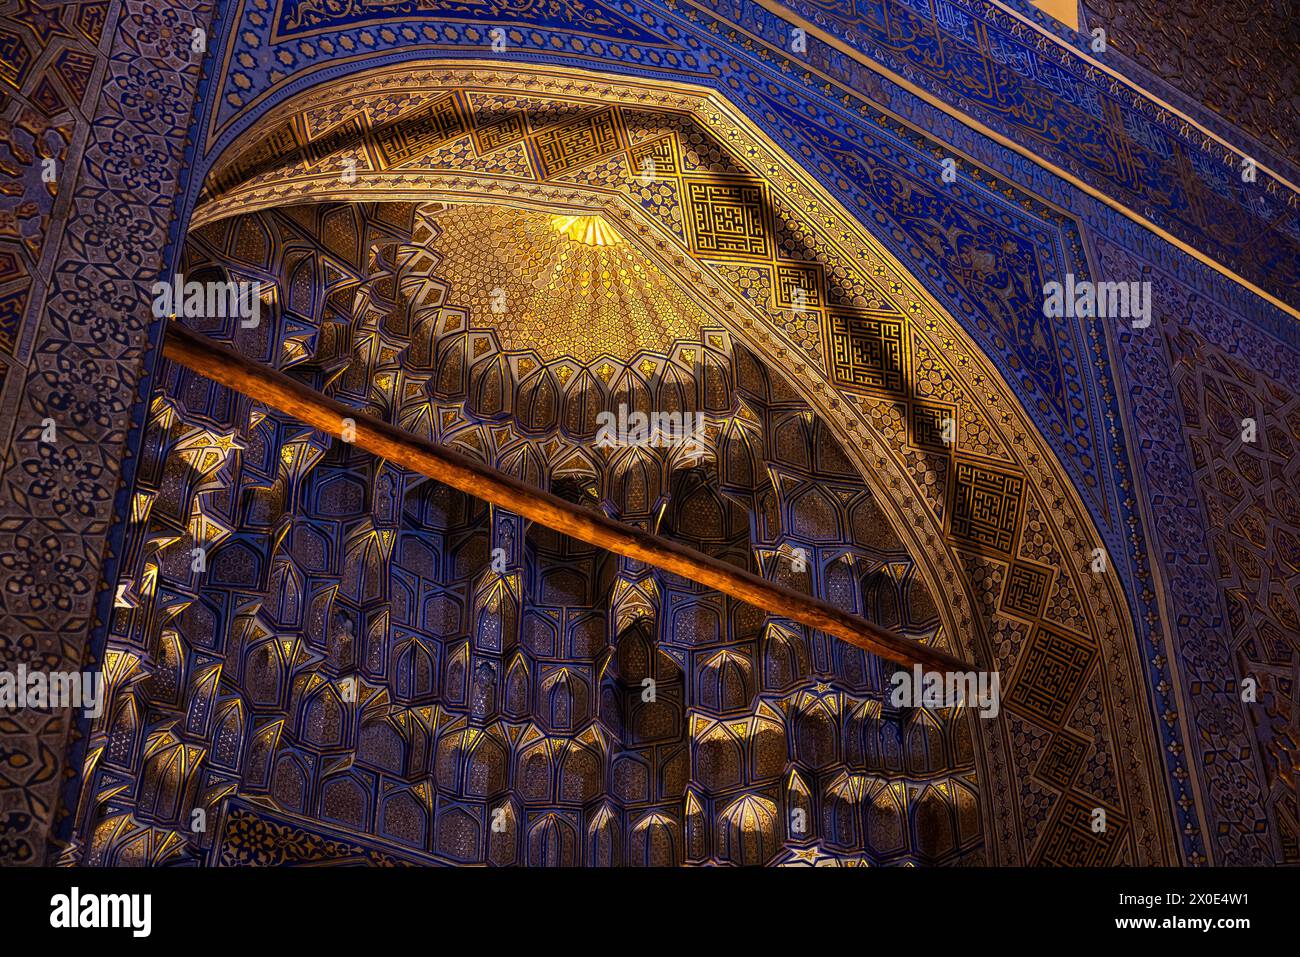 À l'intérieur du mausolée, des niches profondes et divers muqarnas décoratifs. Mausolée Gur-e-Amir érigé à l'initiative et aux frais de Timur en 1404 Banque D'Images